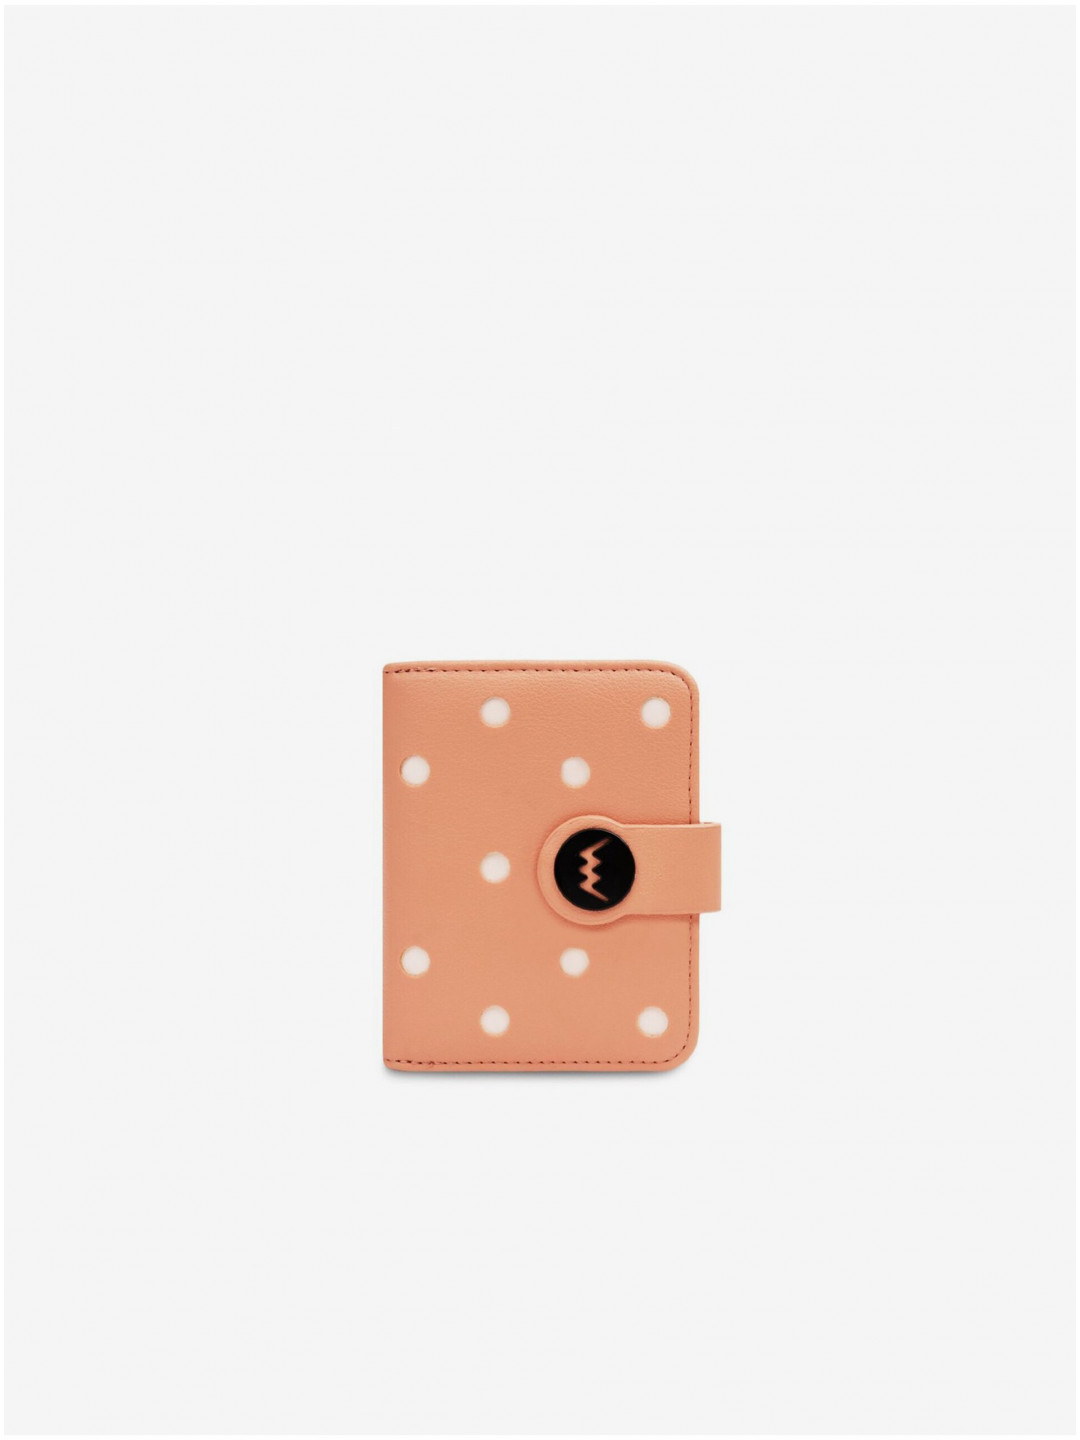 Meruňková dámská puntíkovaná peněženka Vuch Pippa Apricot